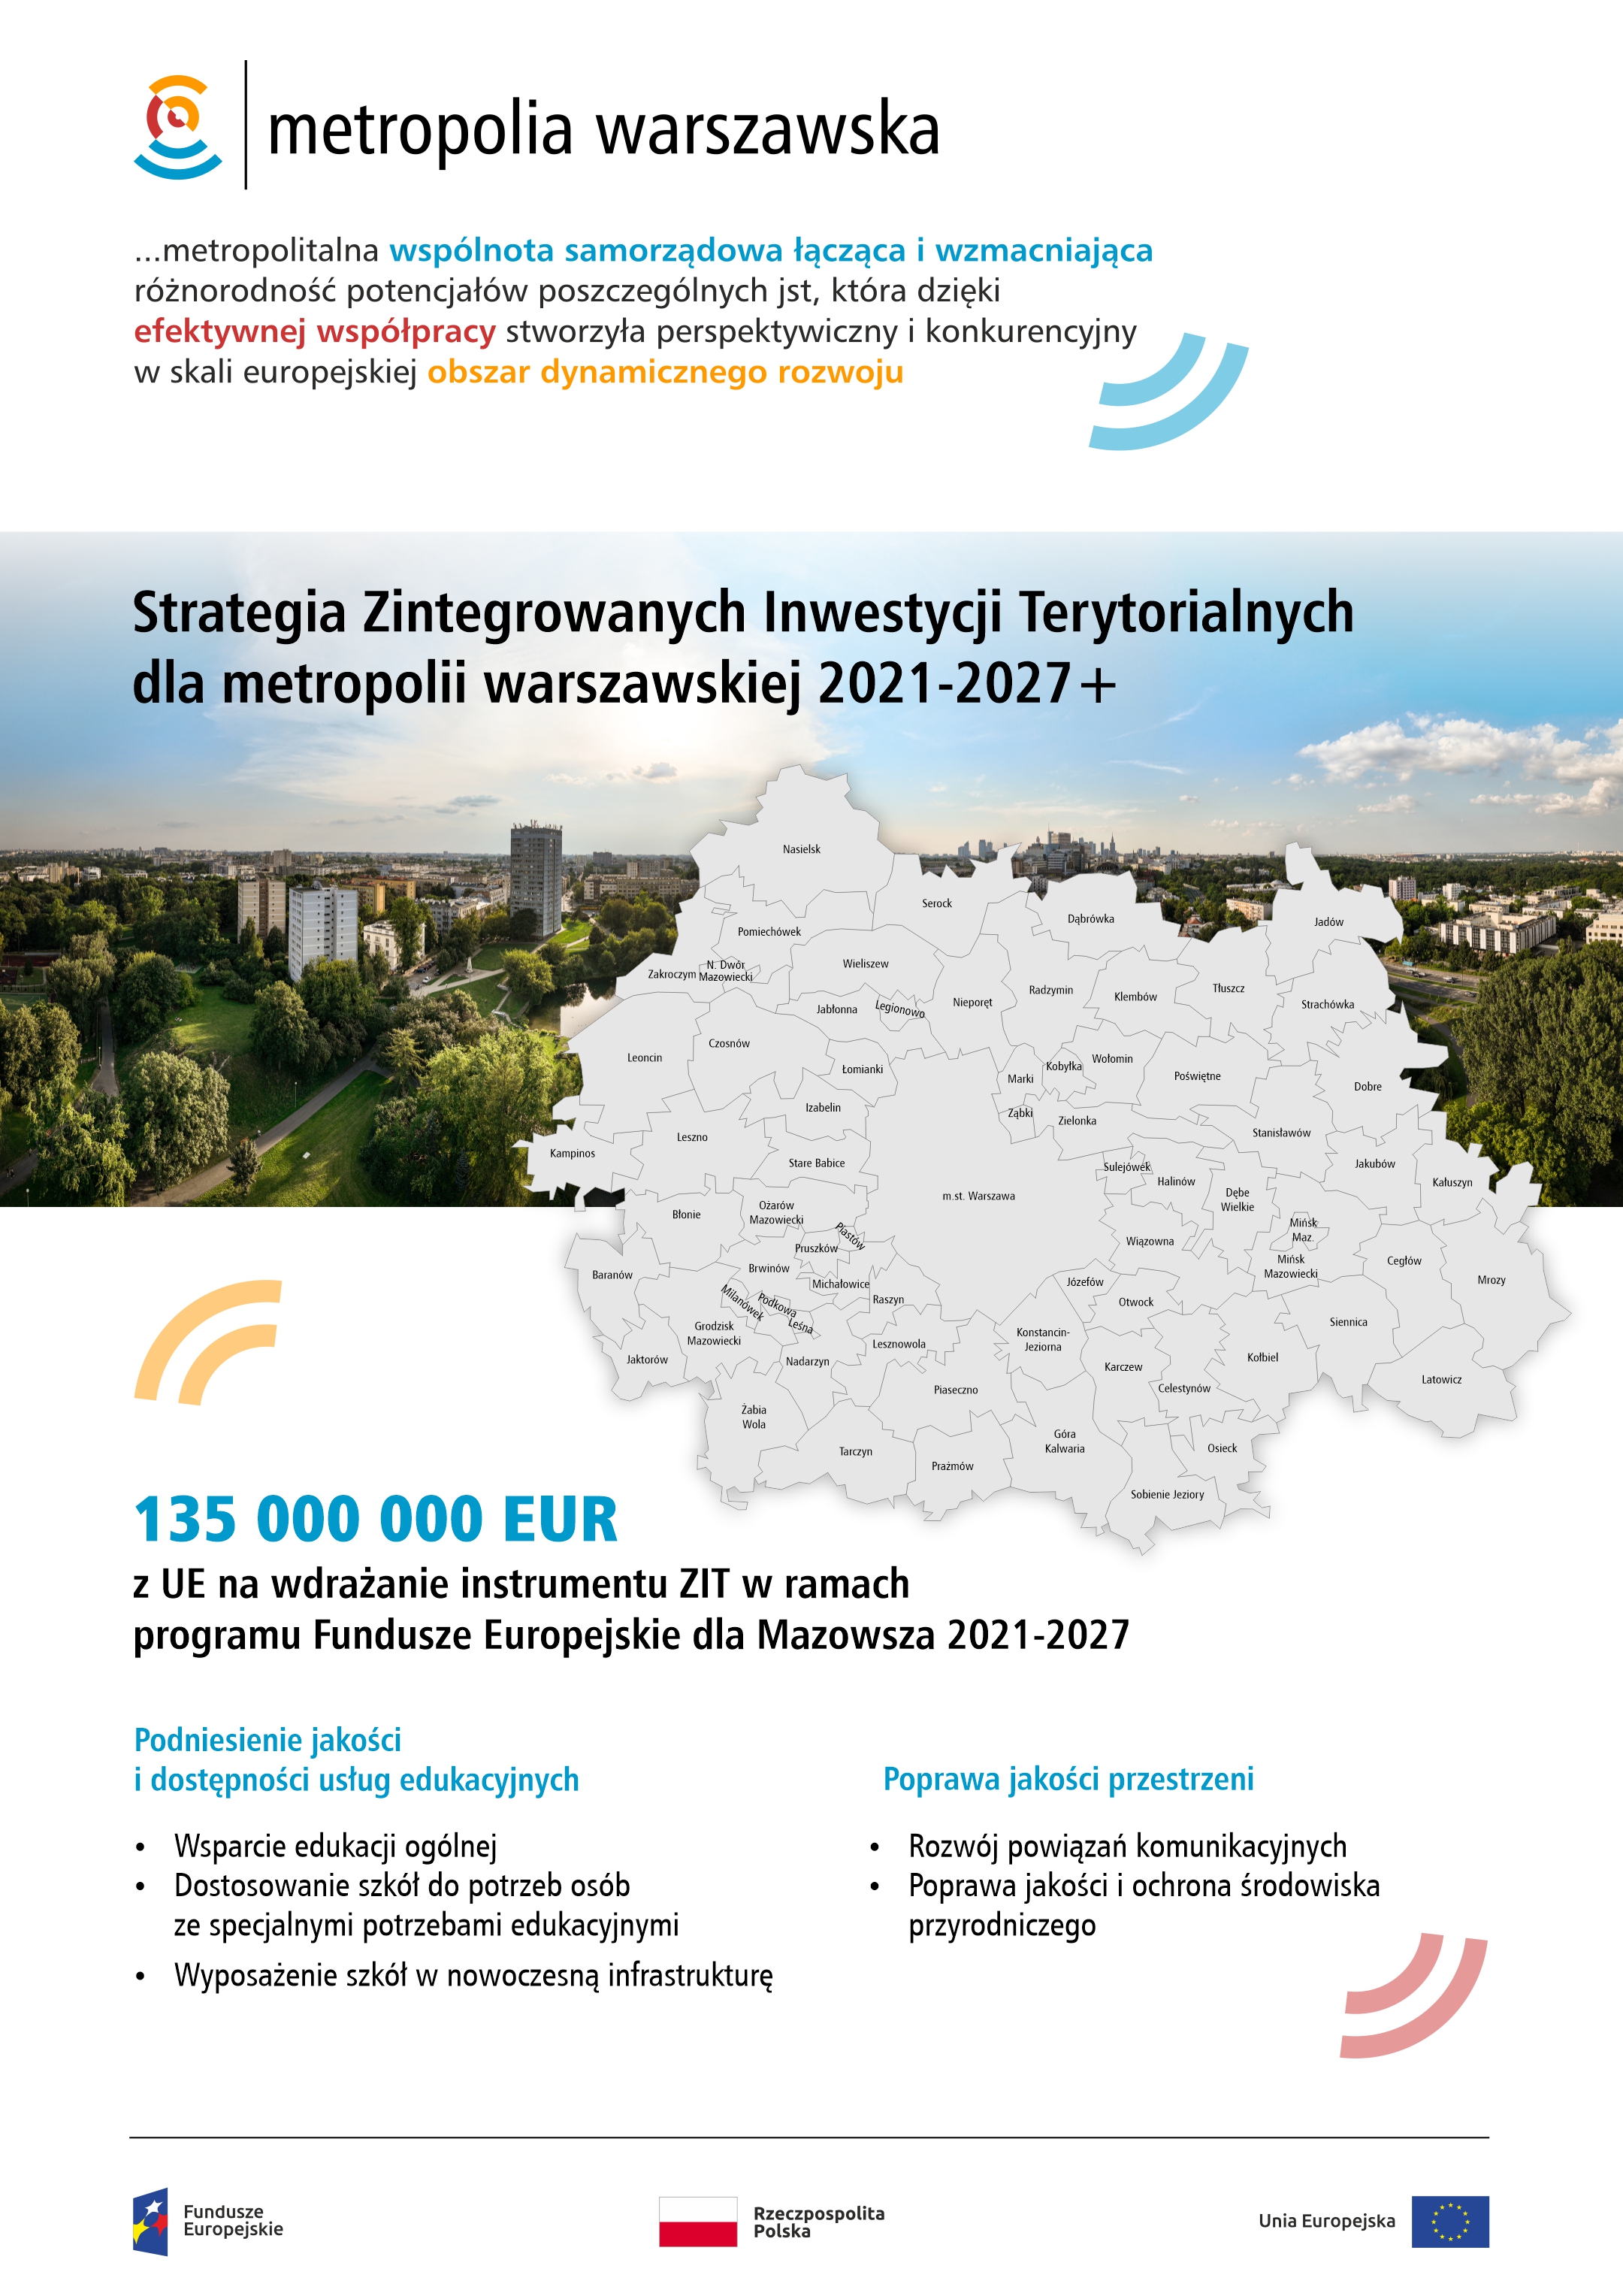 Strategia ZIT dla metropolii warszawskiej 2021-2027+ pozytywnie zaopiniowana